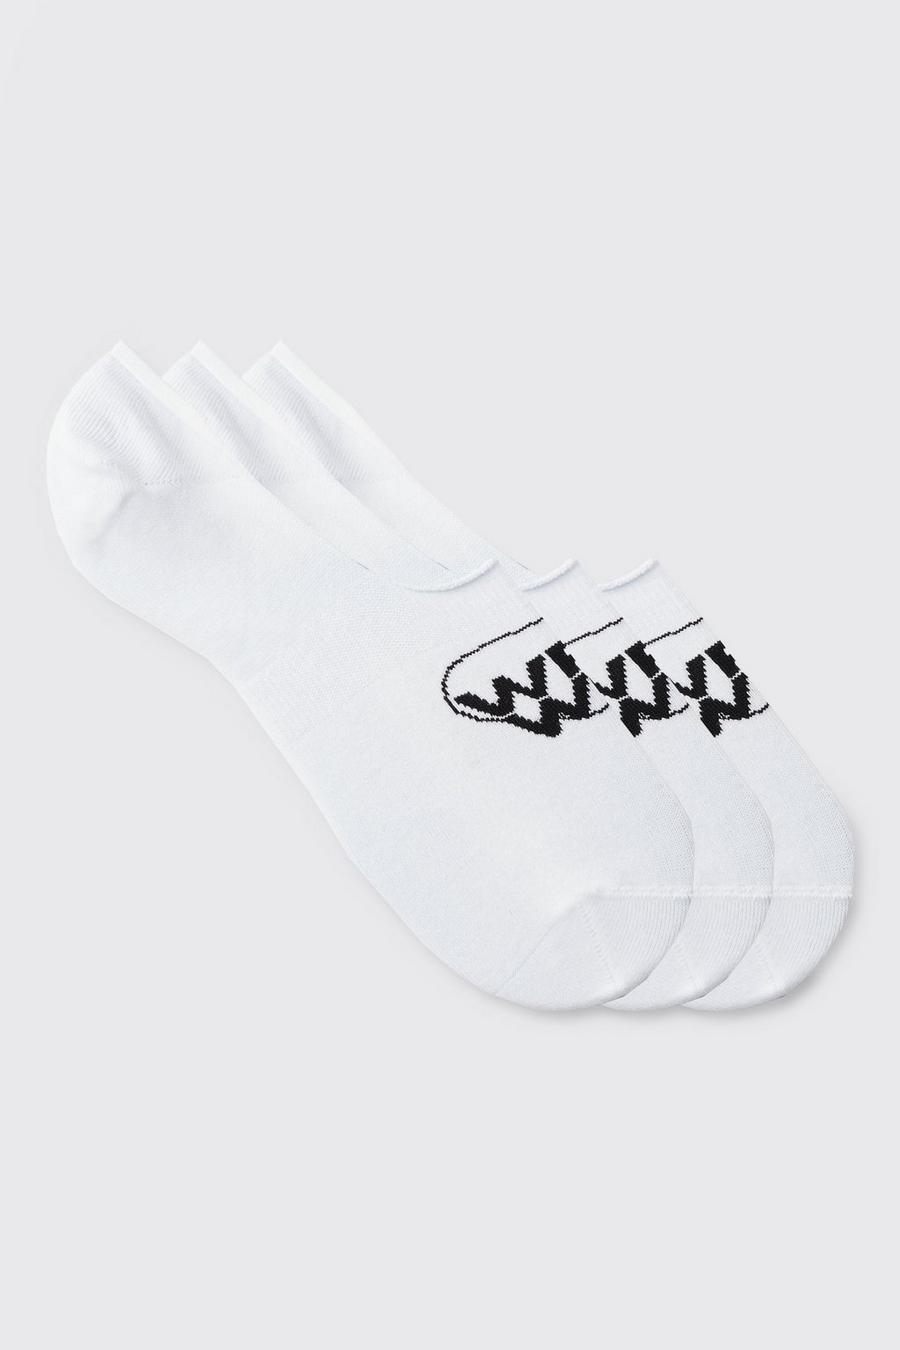 Pack de 3 pares de calcetines invisibles con logo Worldwide, White